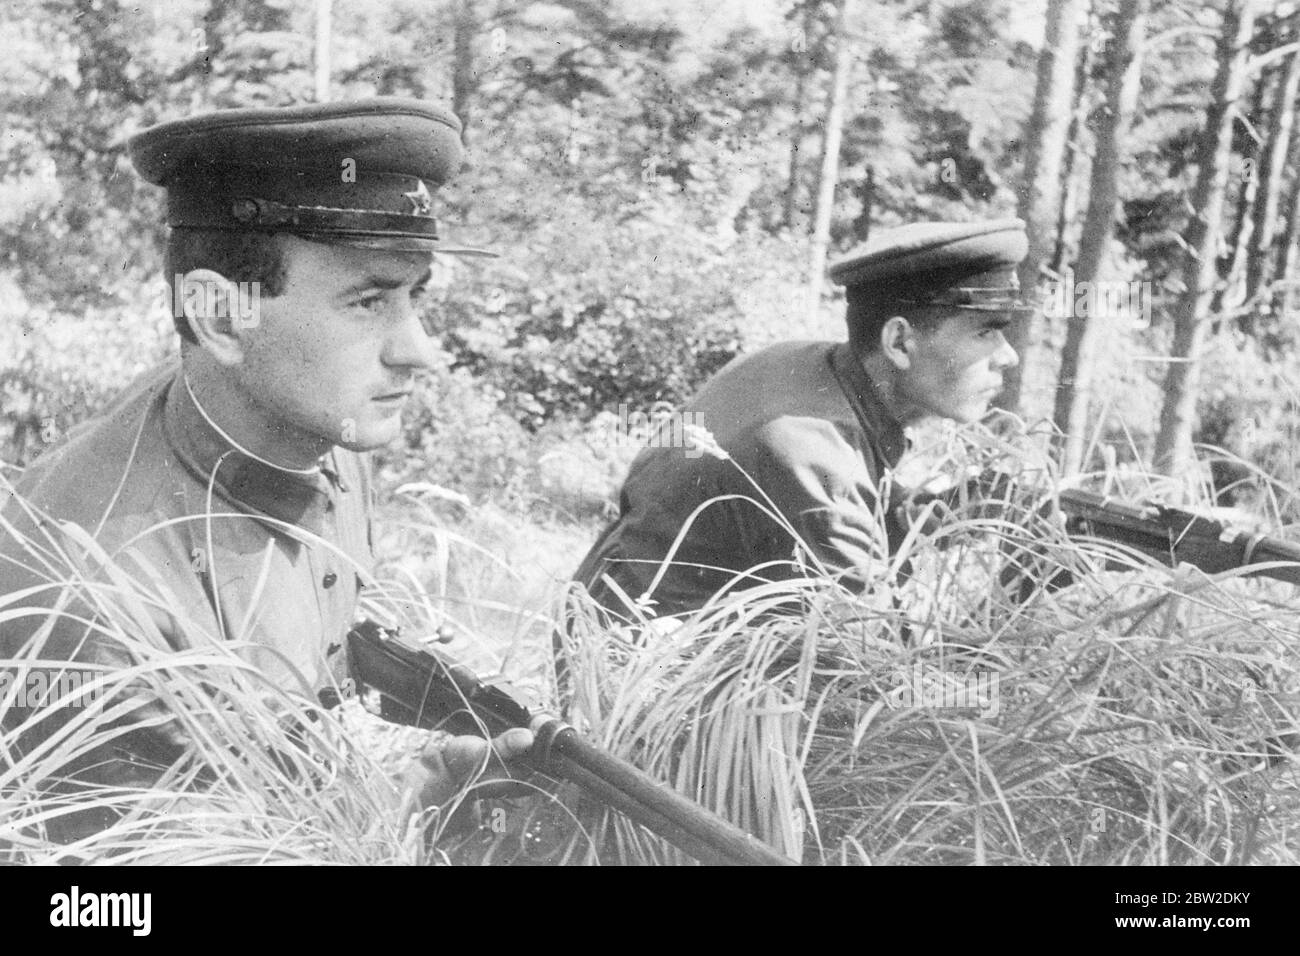 De jeunes gardes-frontières soviétiques, des yeux attentifs et des fusils prêts, gardent une surveillance sinistre aux frontières de l'Ukraine - l'objectif ultime d'Hitler. 16 octobre 1938 Banque D'Images